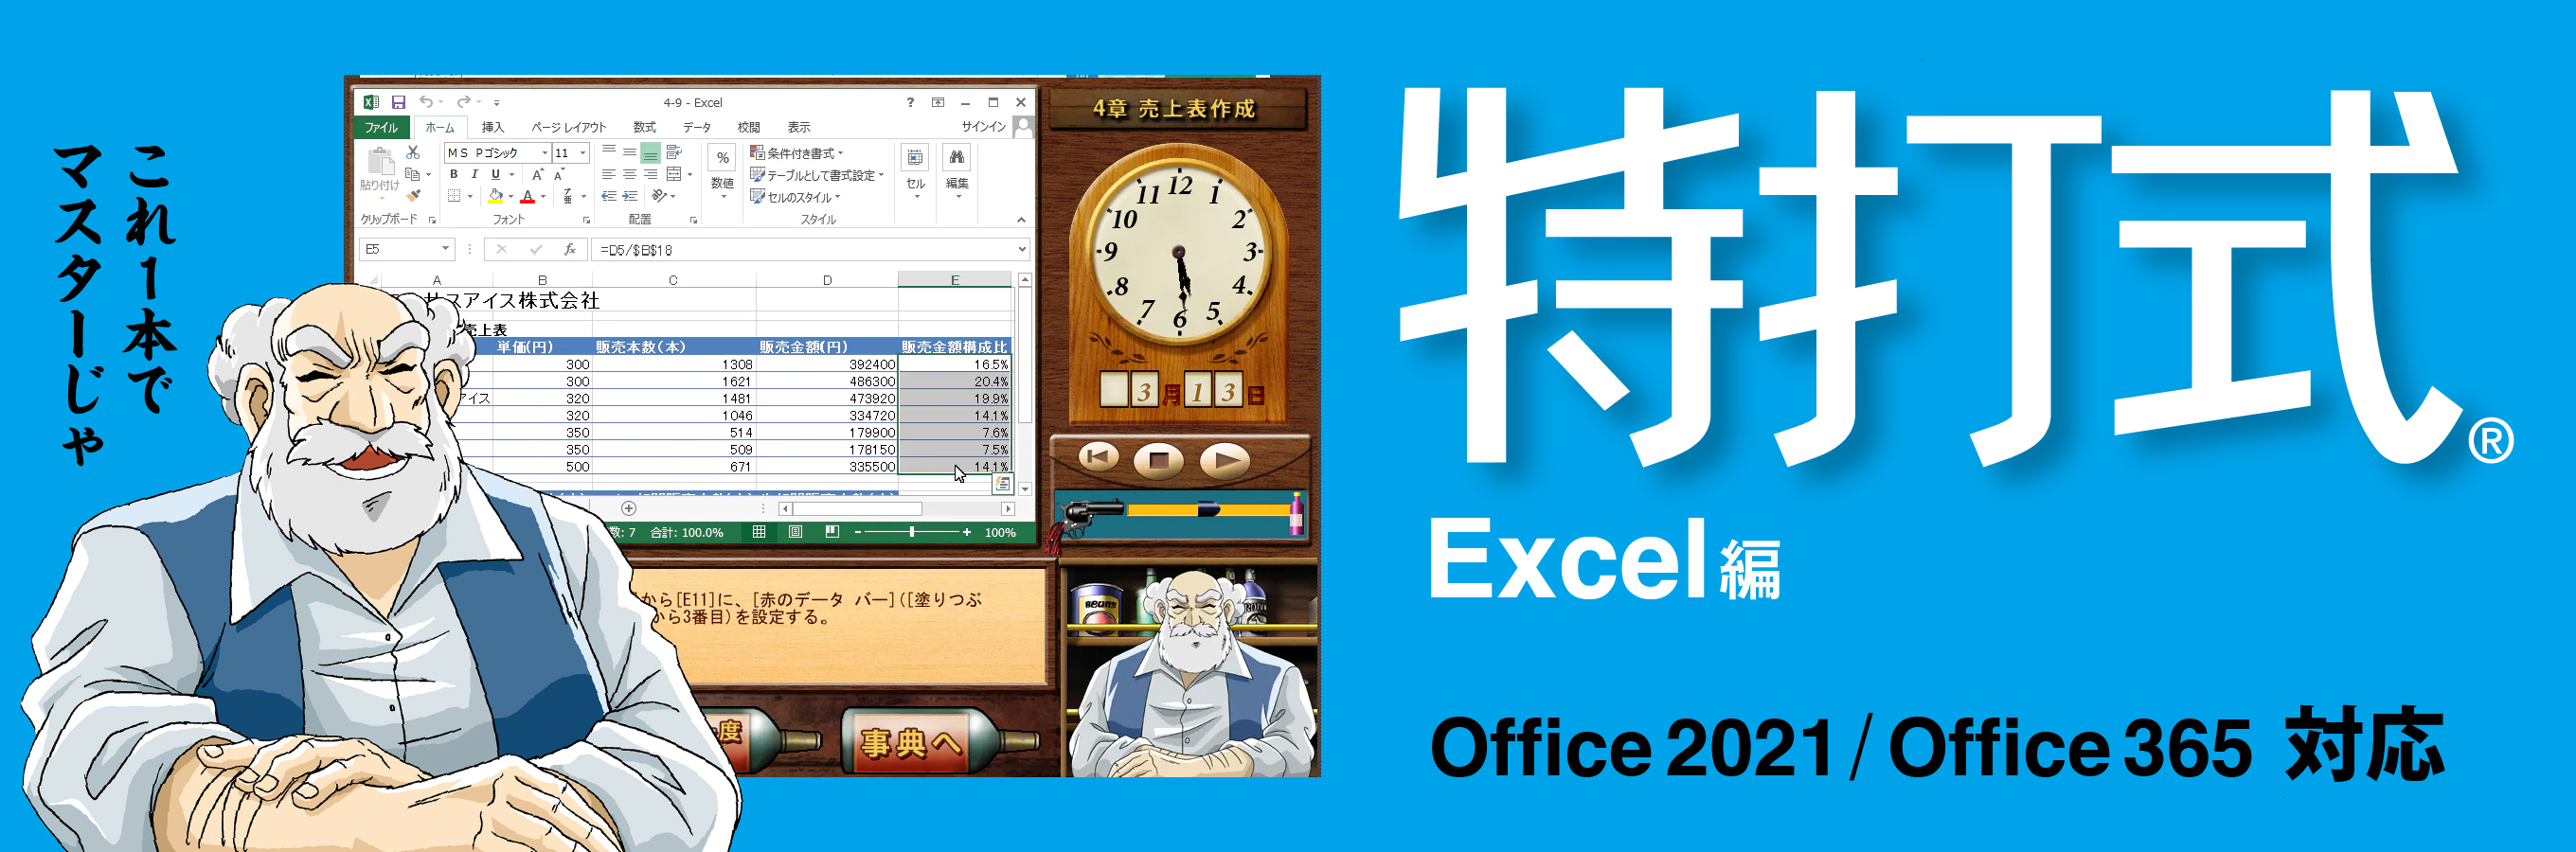 最新版Office 2021対応版「特打式Excel」